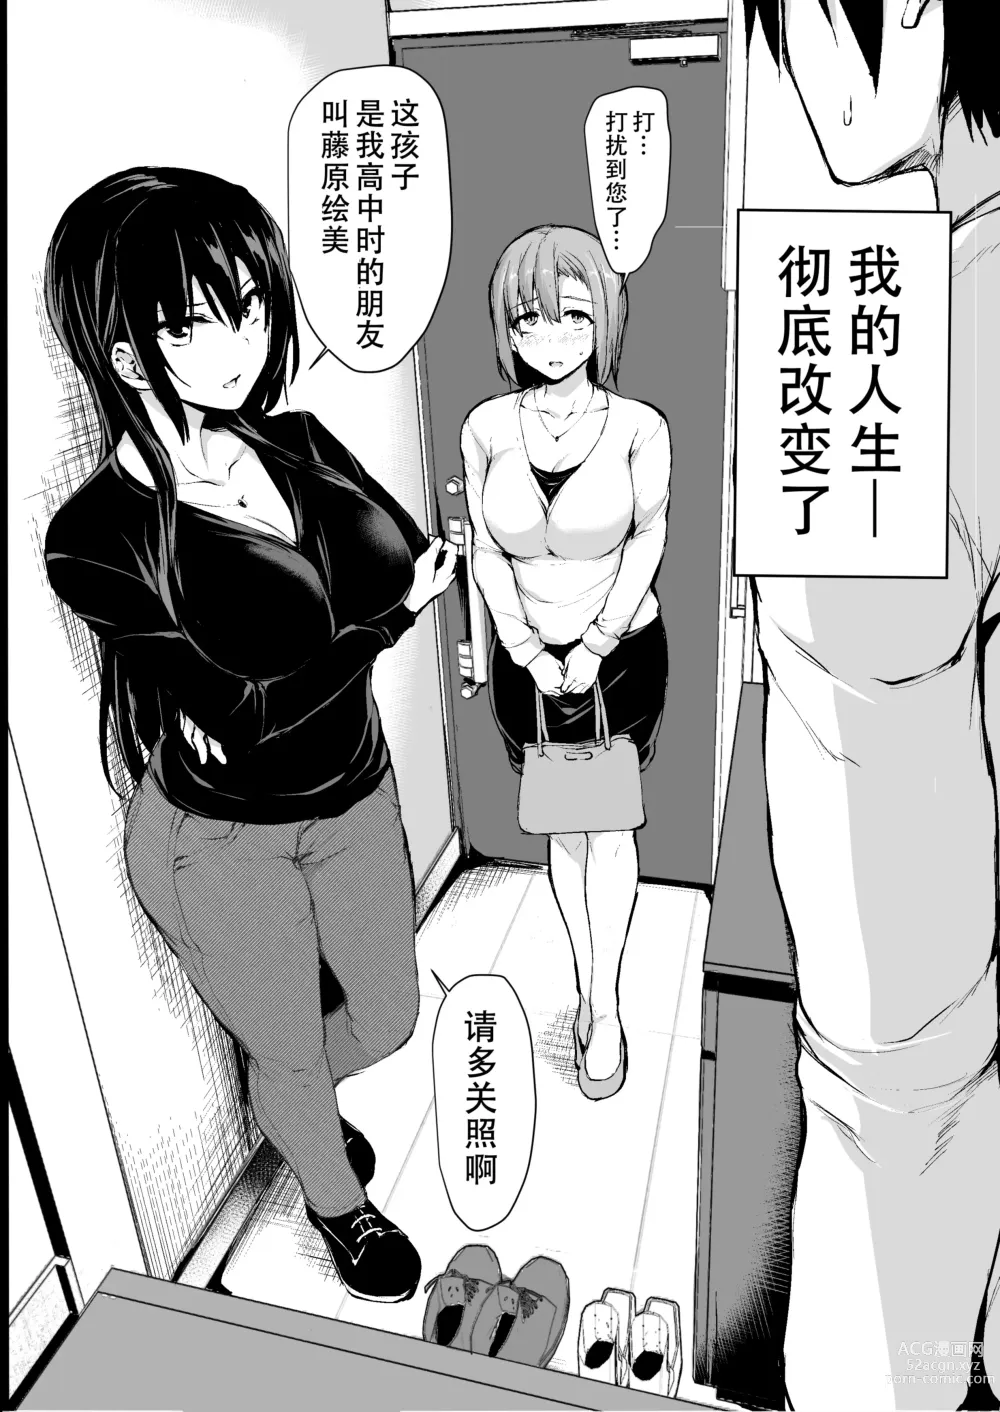 Page 3 of manga 自用